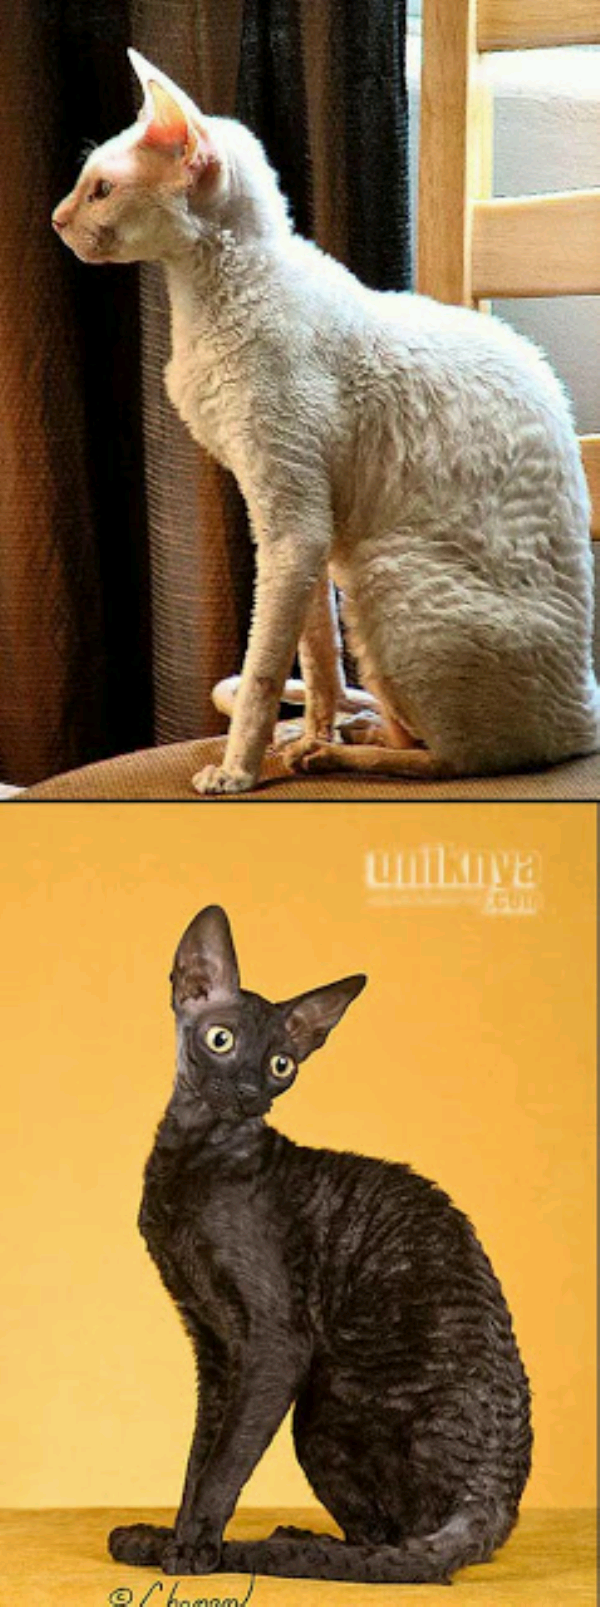 Gambar Meme Kucing Yang Lucu Keren Dan Kocak Update Status